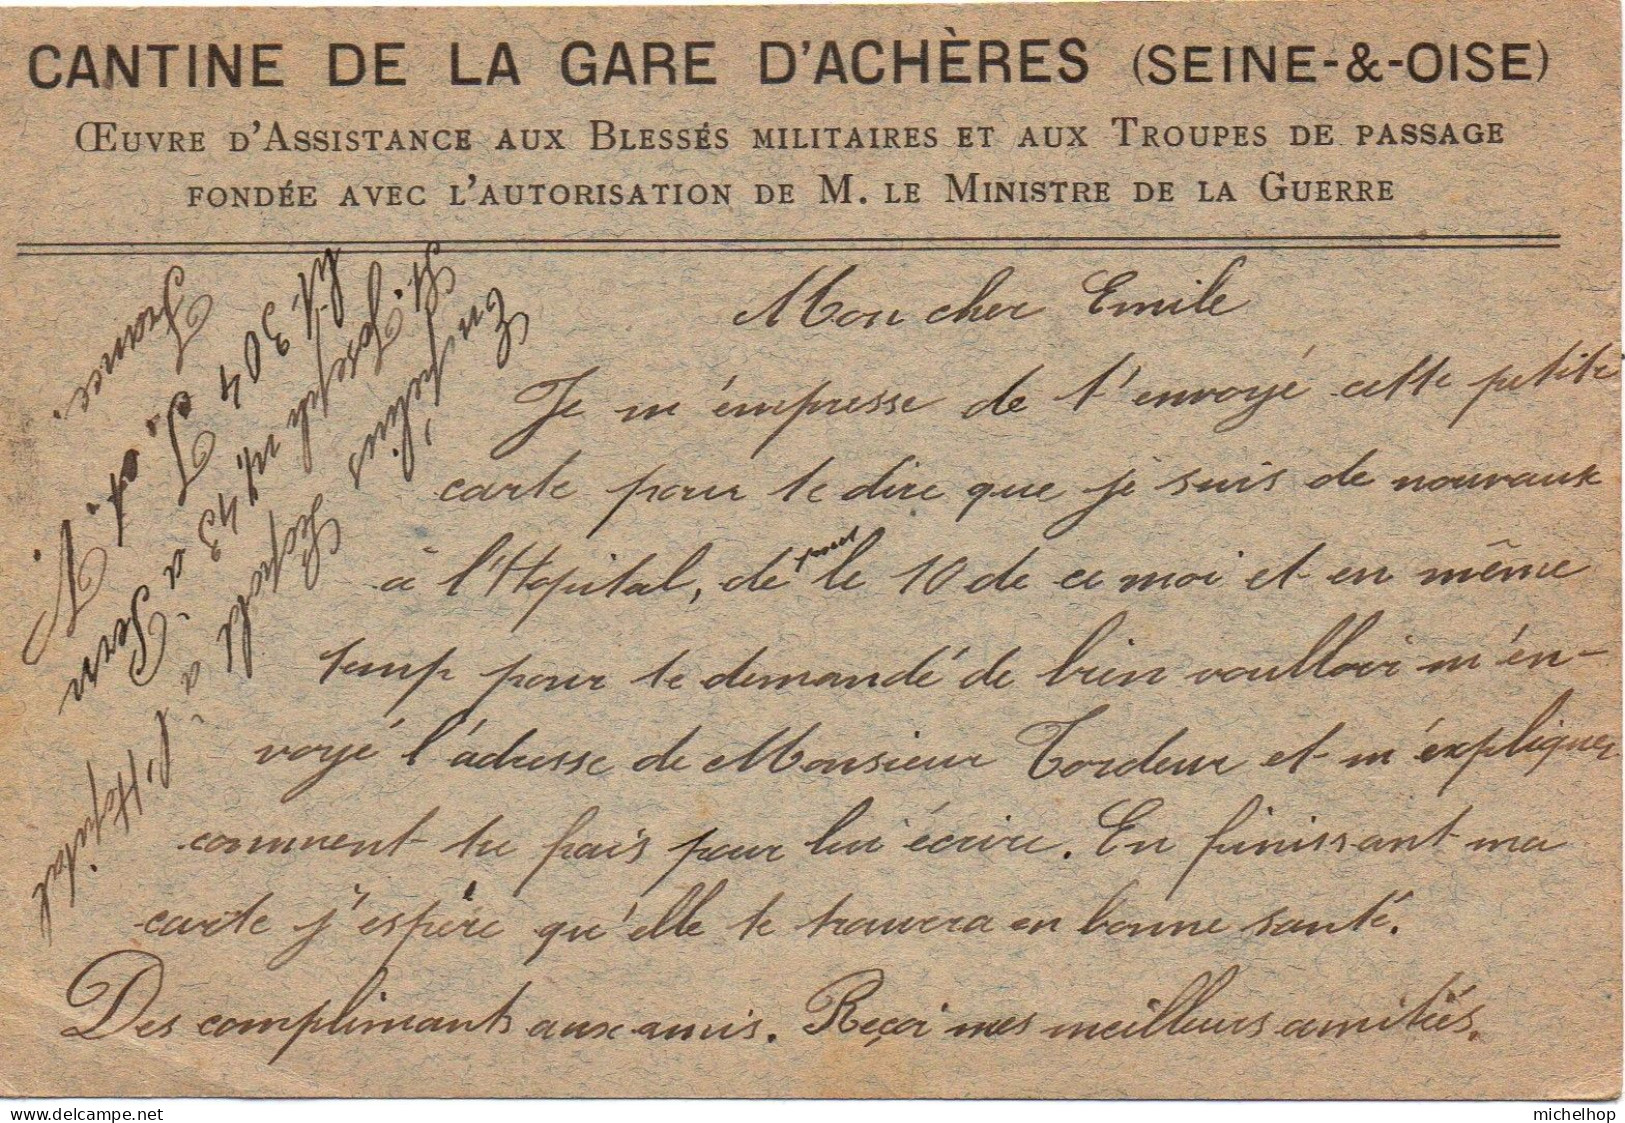 Carte Postale En Franchise Expédiée Par Un Militaire Belge Hospitalisé à St Pern - Repiquage Cantine Gare D'Achères - Belgische Armee